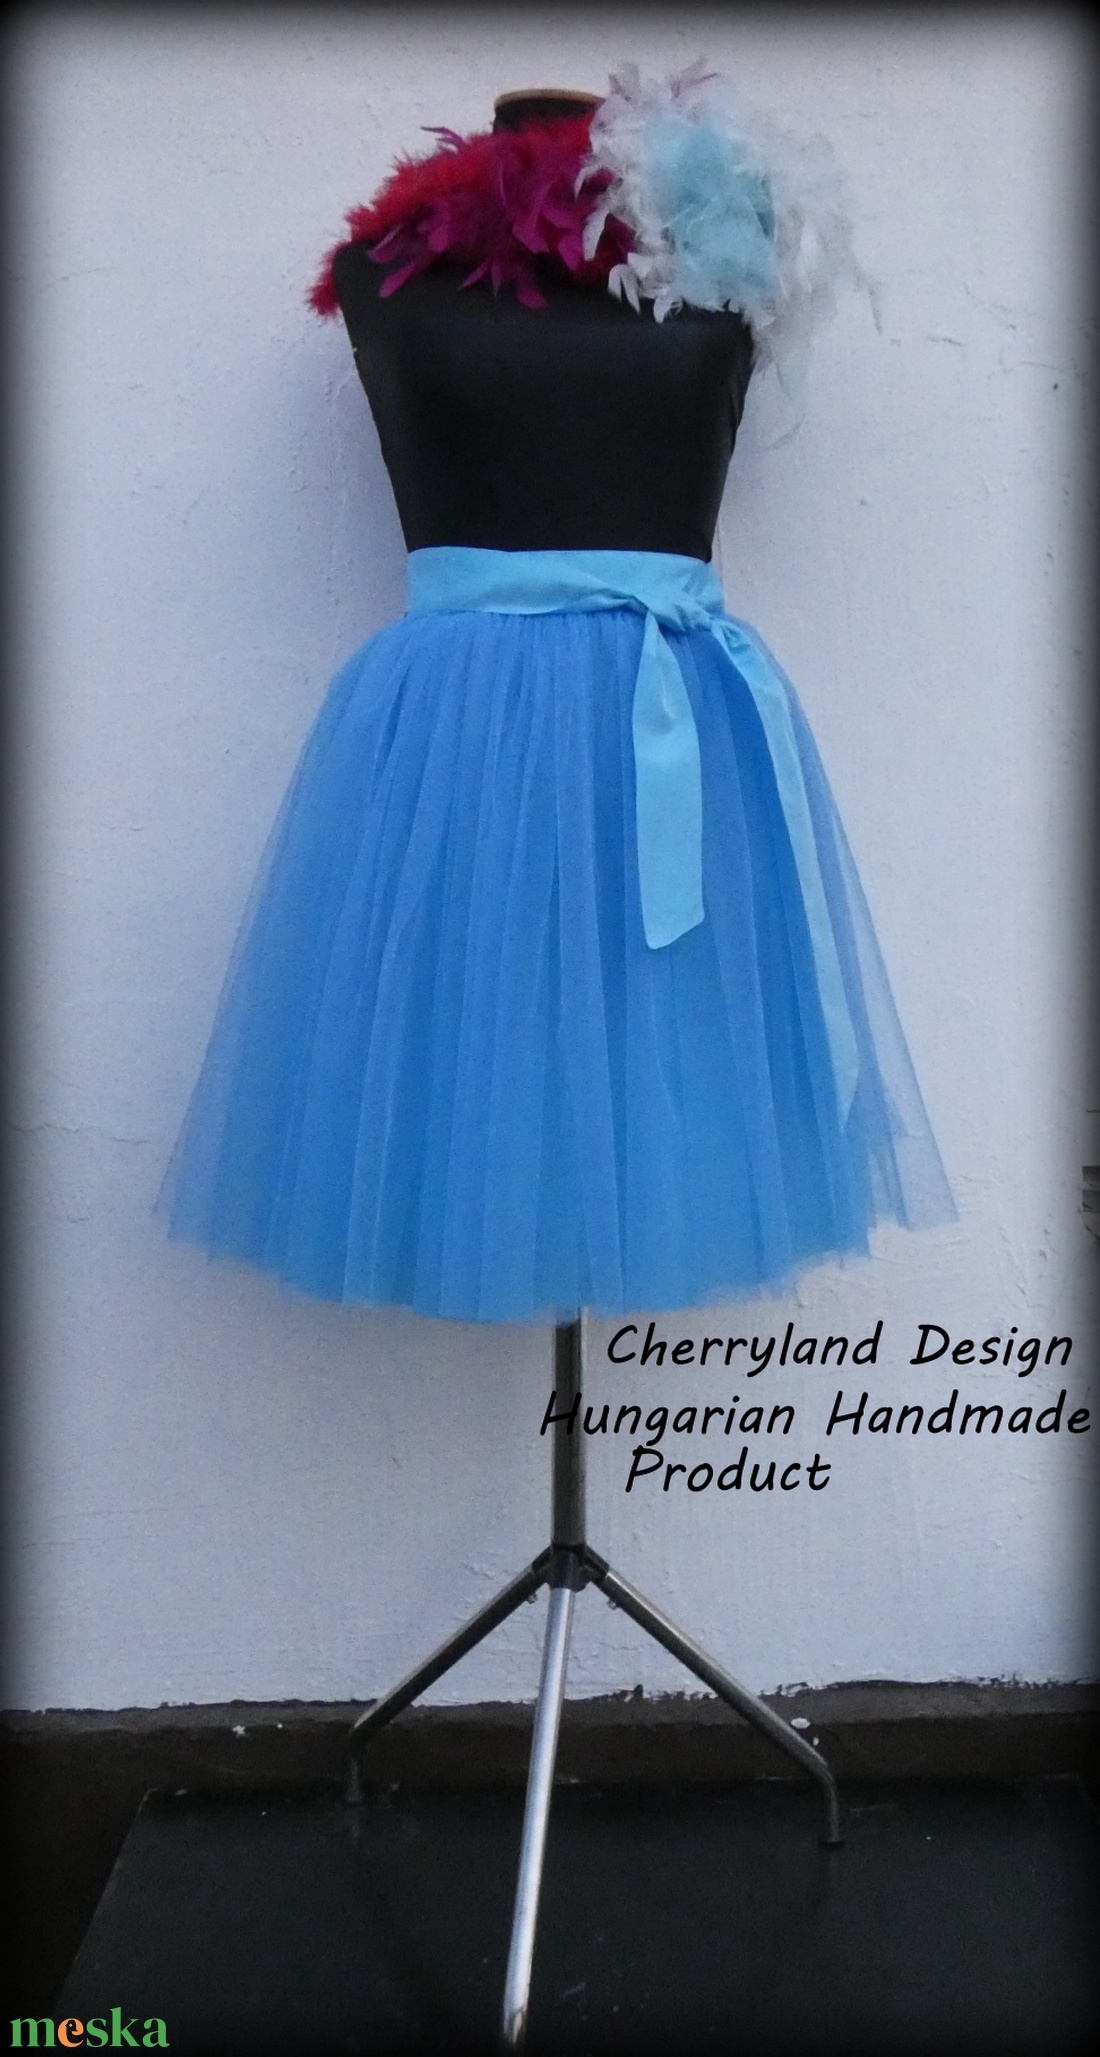 Cherryland Design BabaKék Tüll Szoknya/Blue Tulle Skirt - ruha & divat - női ruha - szoknya - Meska.hu